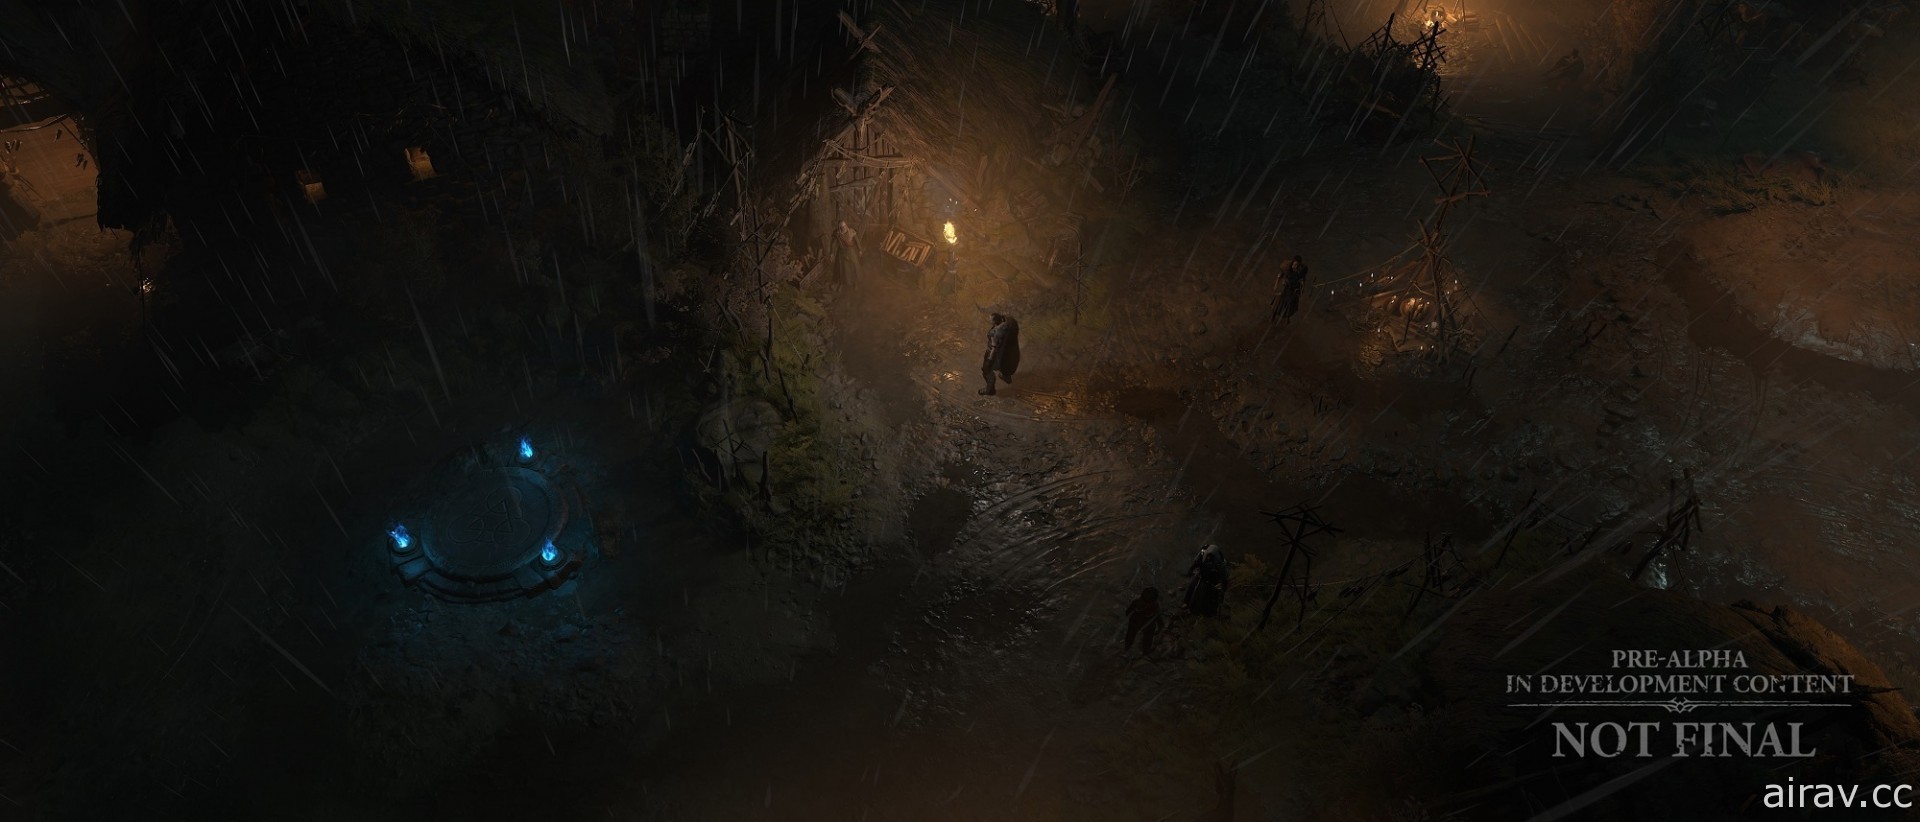 《暗黑破壞神 4》將有超過 150 個隨機地下城供探索 新公開環境美術影片